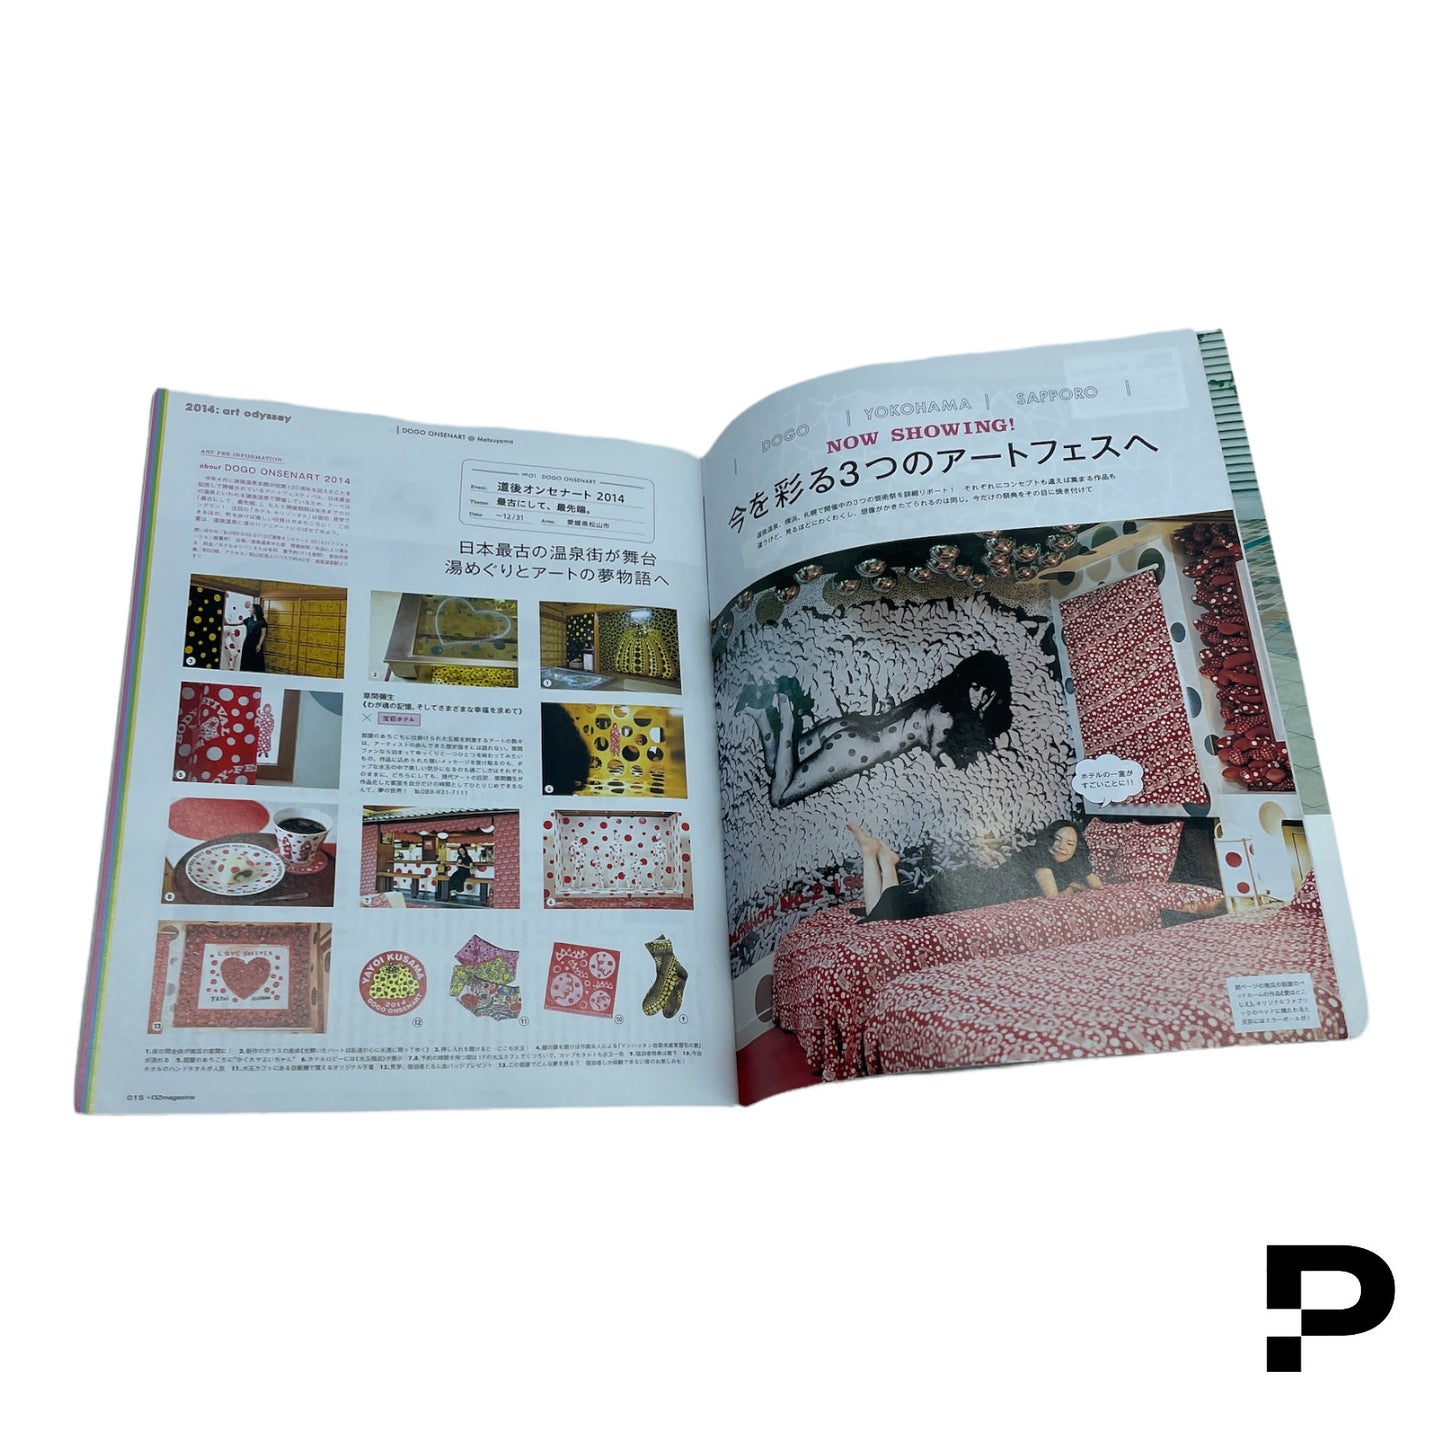 🔴 OZ Magazine - Yayoi Kusama Retrospective